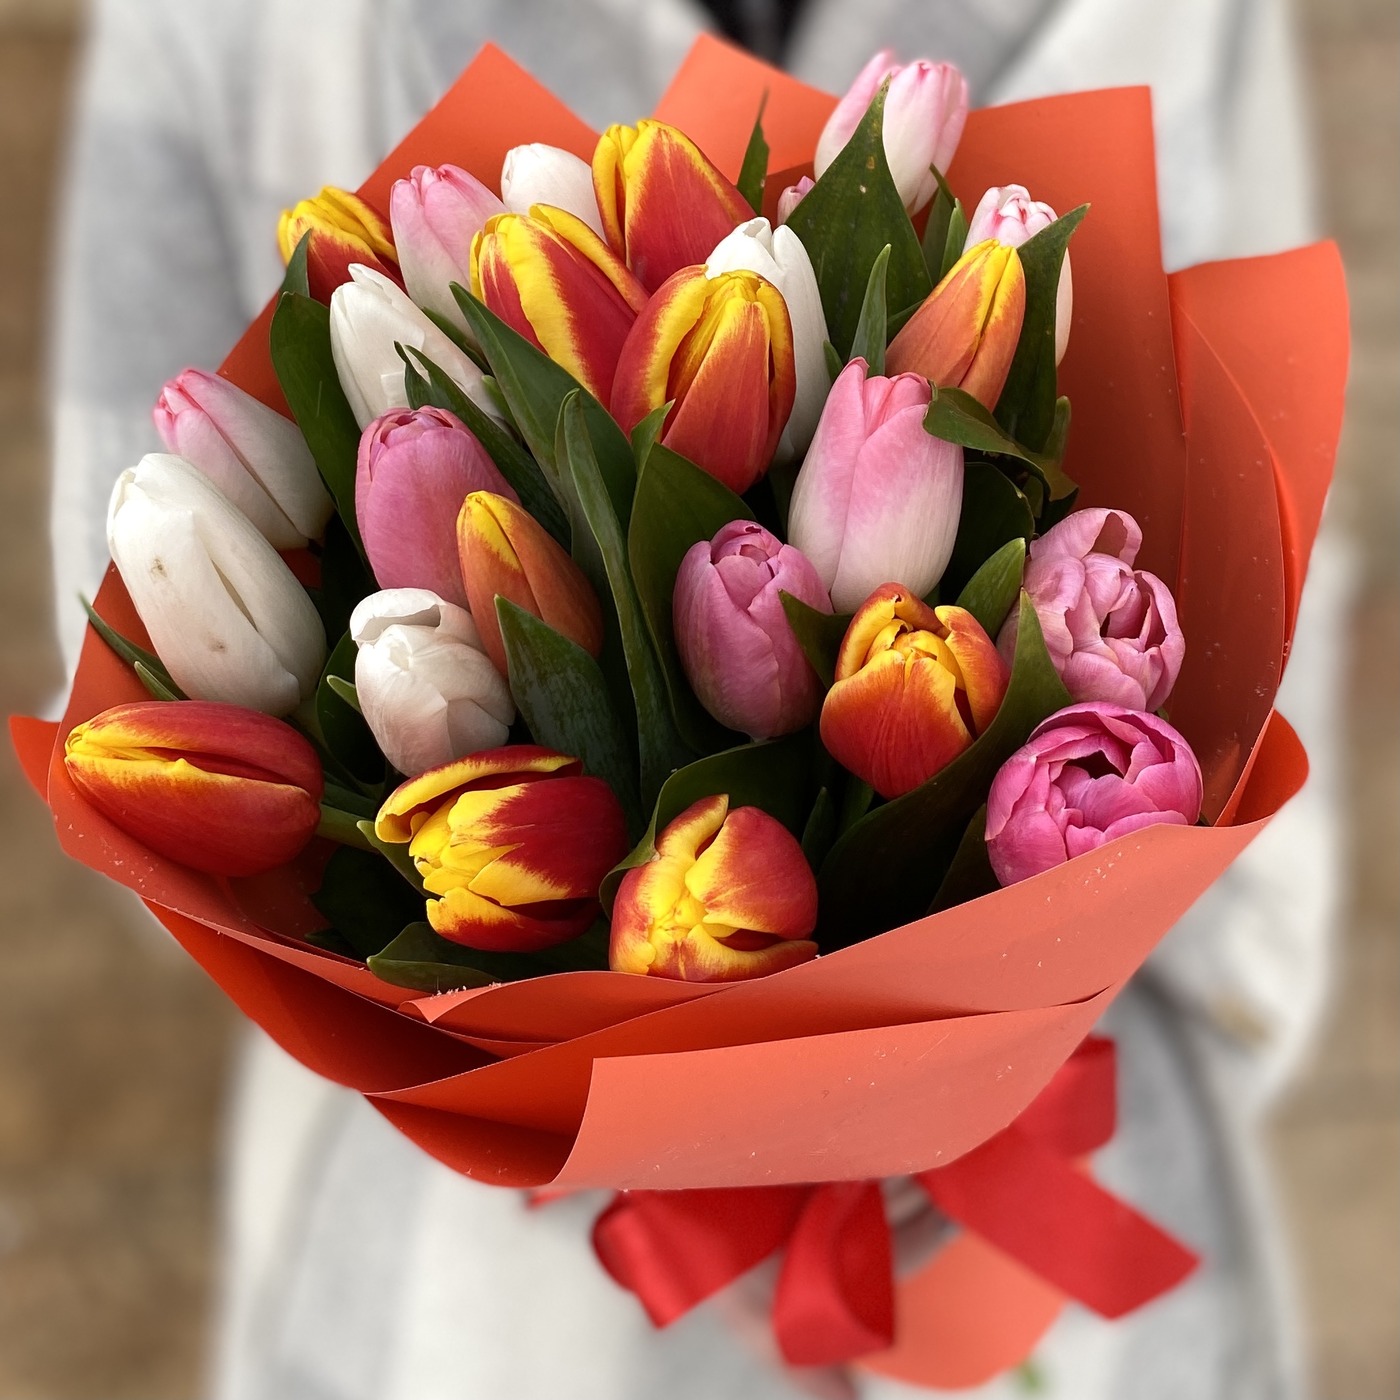 Букет 25 тюльпанов Микс - купить с доставкой или самовывозом в Москве и области в магазине качественных цветов по низким ценам